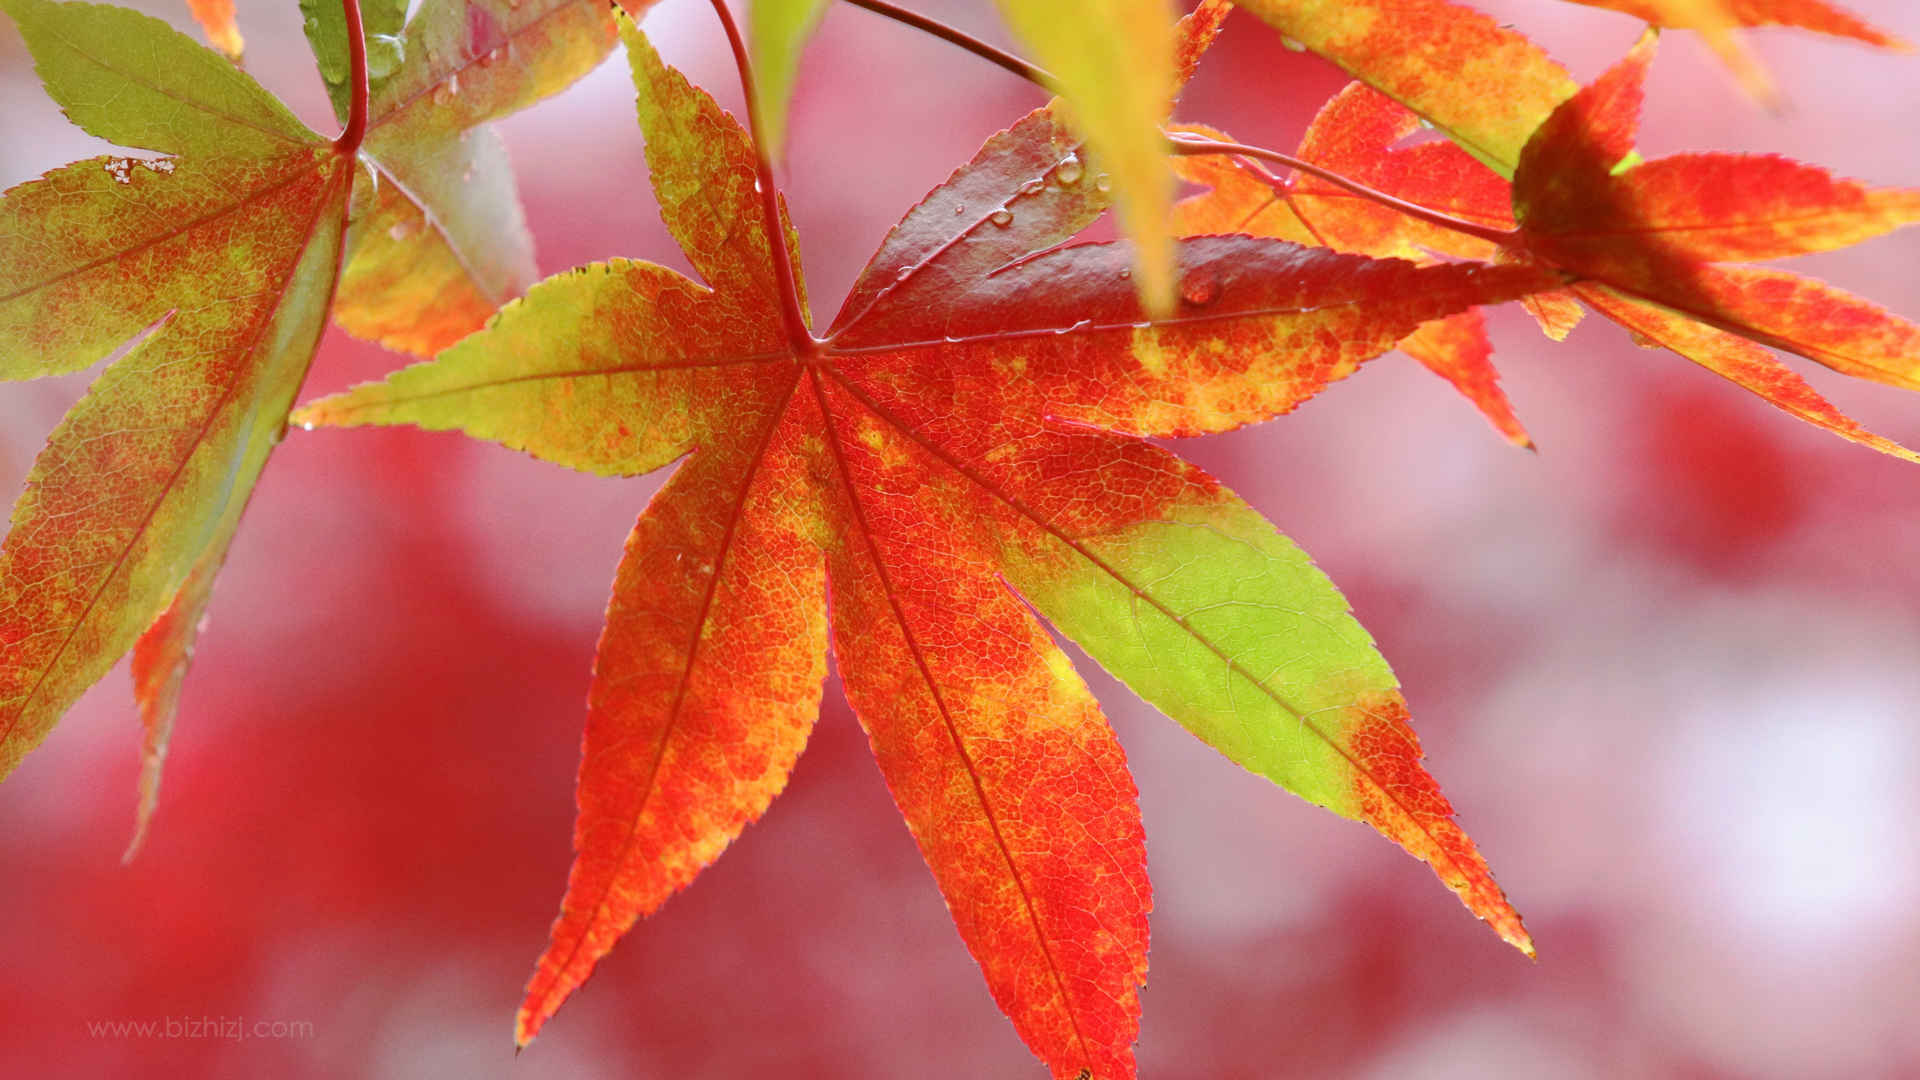 秋天最美热情似火枫叶图片-